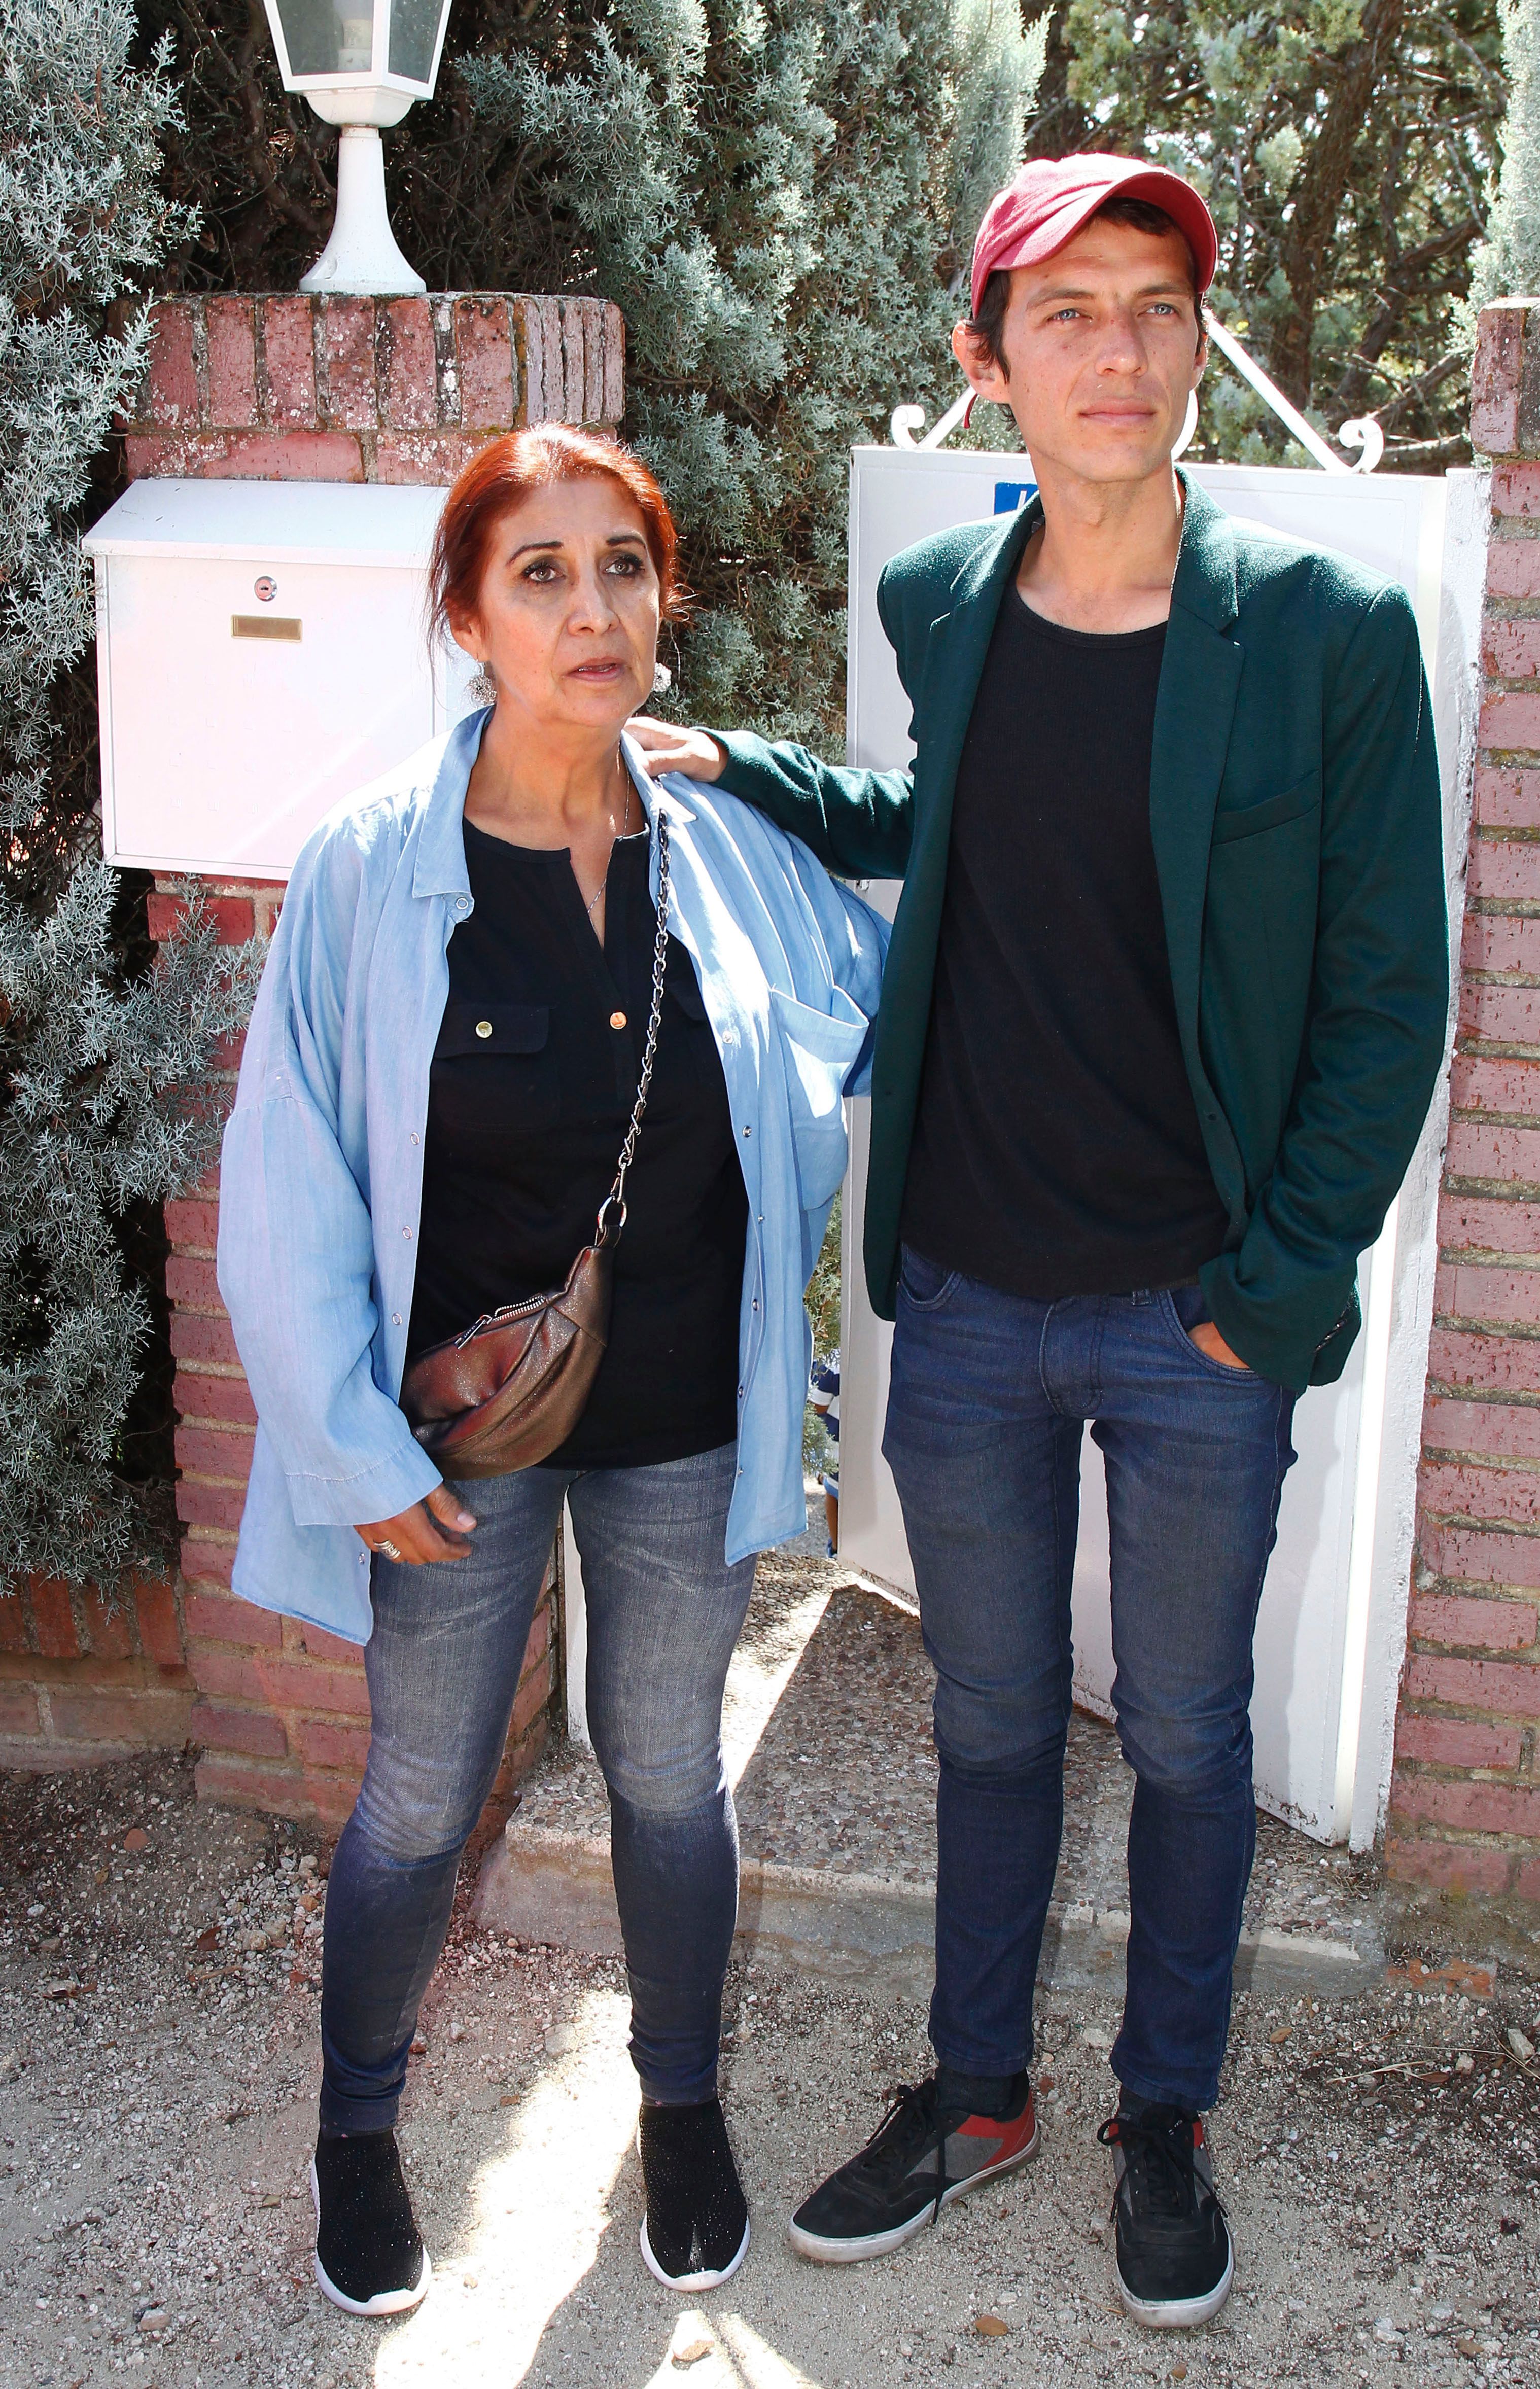 Camilo Blanes y Lourdes Cornelas en Madrid el 10 de septiembre de 2019. | Foto: Getty Images